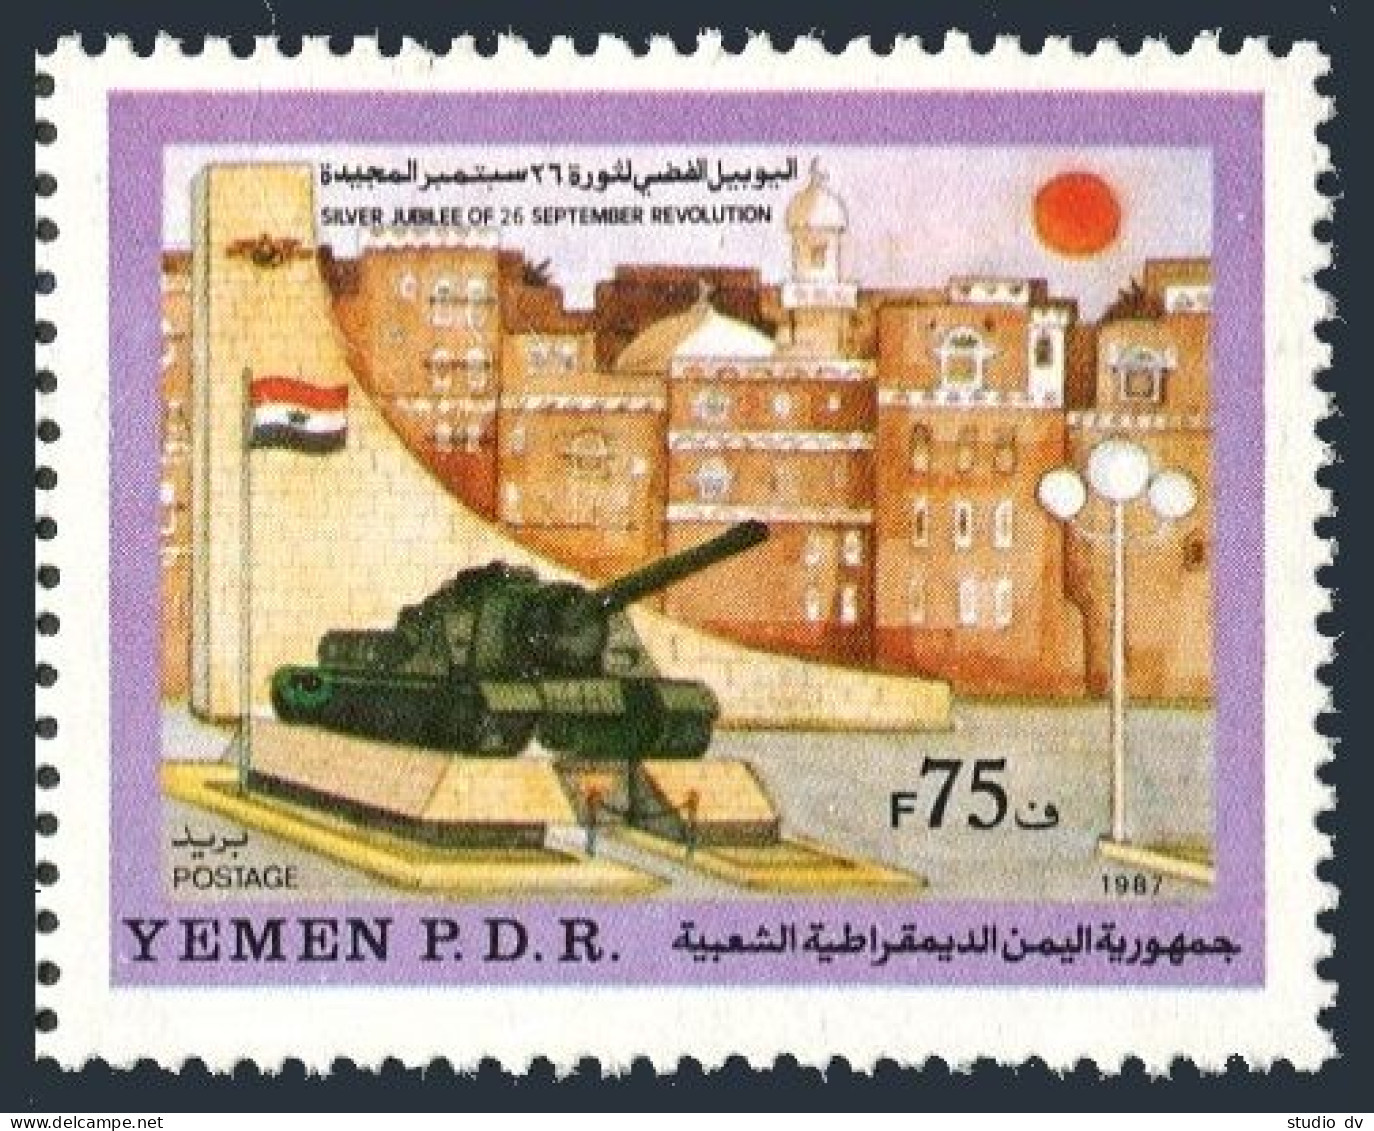 Yemen PDR  395, MNH. Mi 426. September 26 Revolution, 25, 1988. Monument Tank. - Yemen